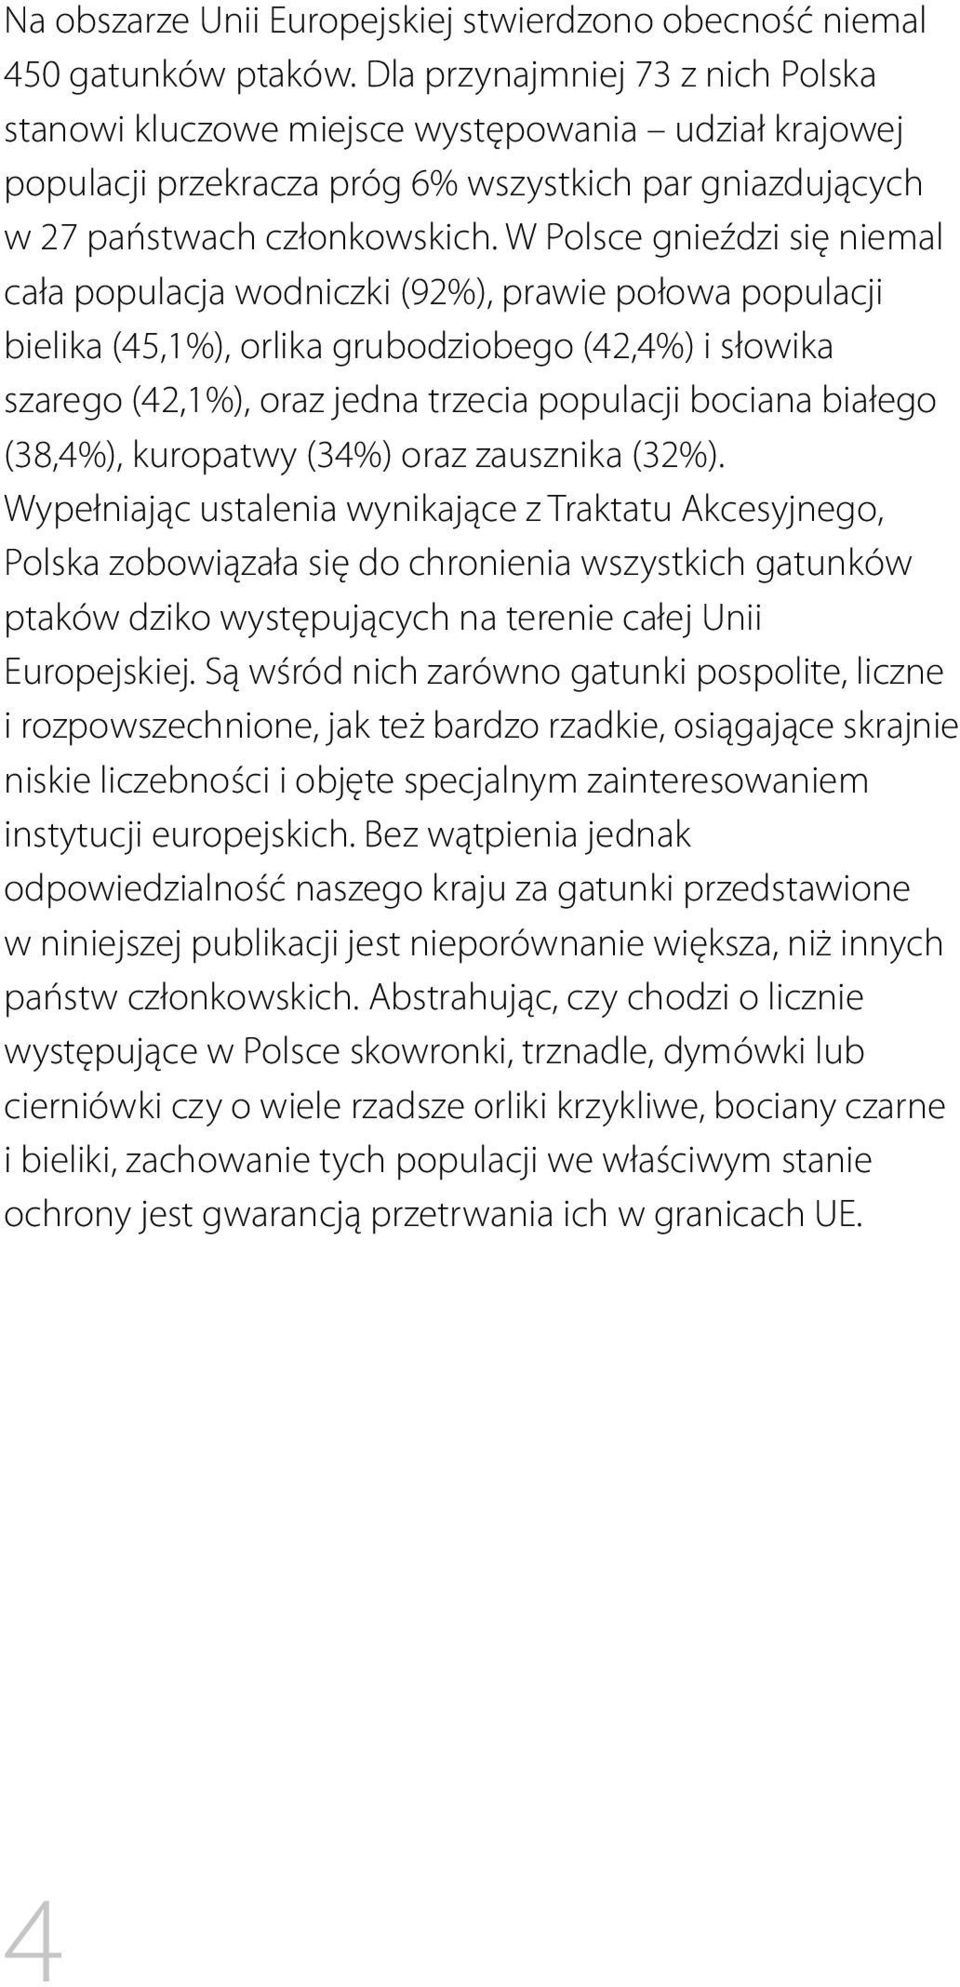 W Polsce gnieździ się niemal cała populacja wodniczki (92%), prawie połowa populacji bielika (45,1%), orlika grubodziobego (42,4%) i słowika szarego (42,1%), oraz jedna trzecia populacji bociana